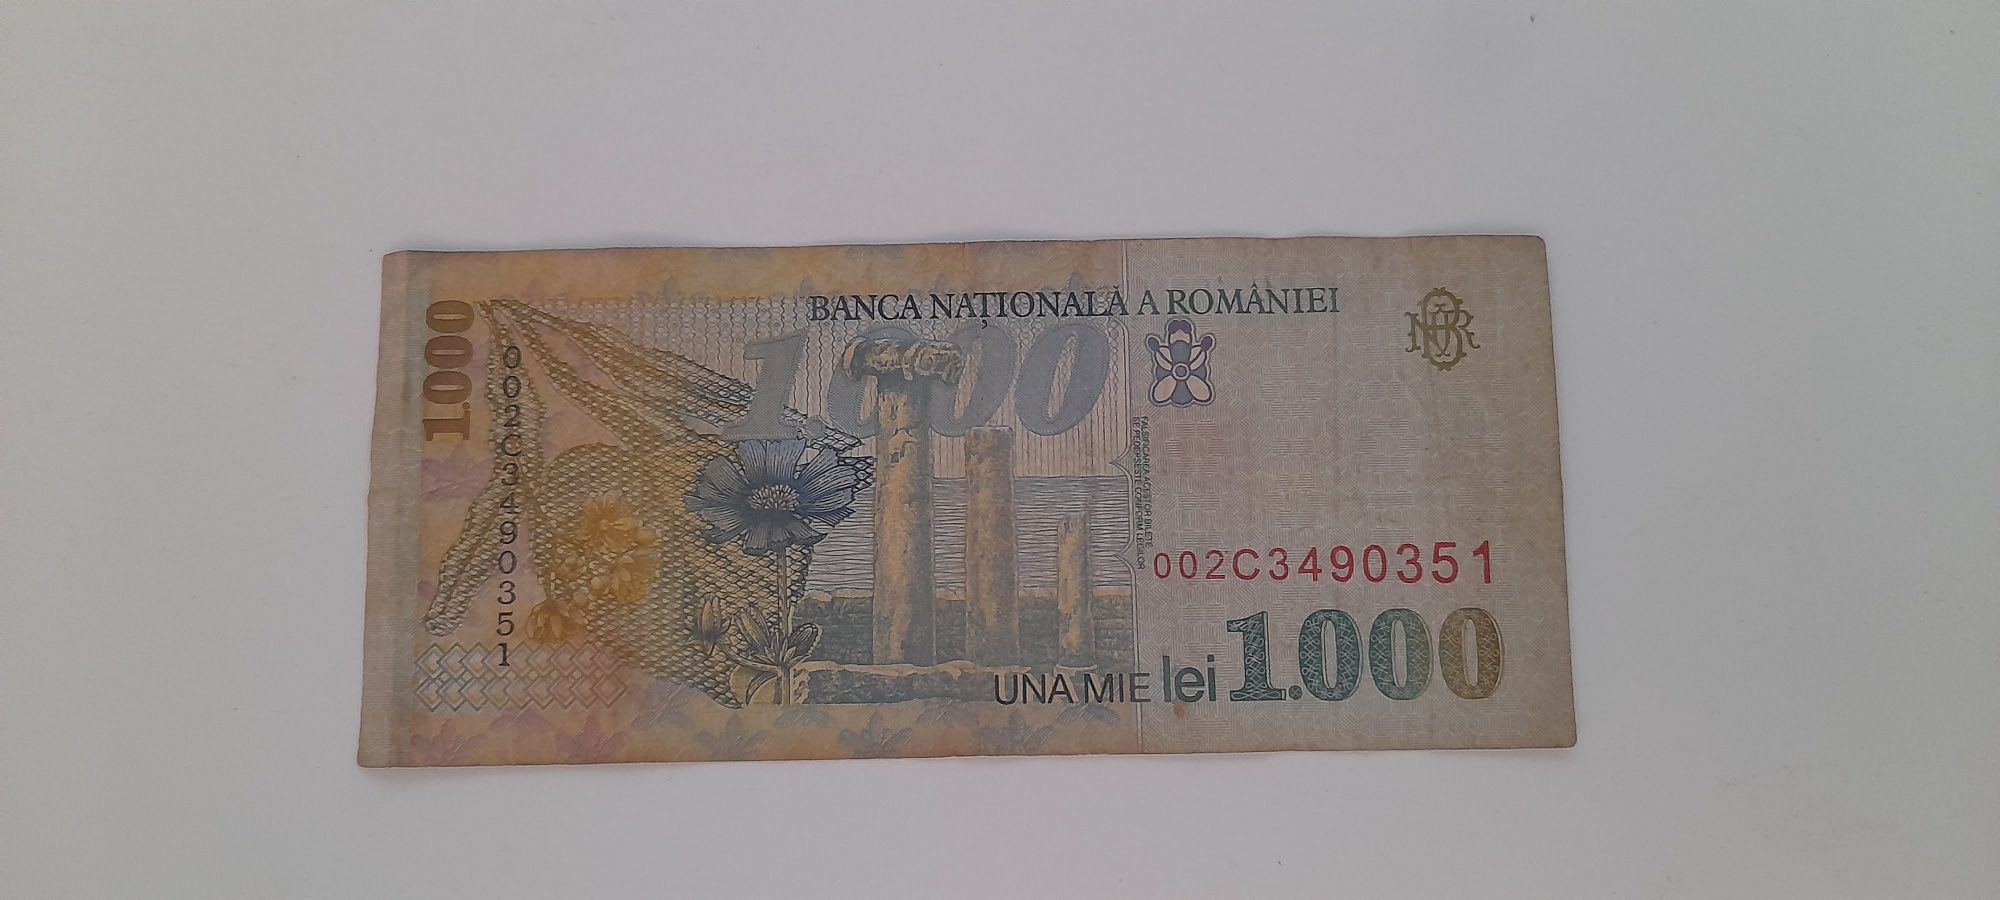 Vând bancnotă de 1000 lei din anul 1998